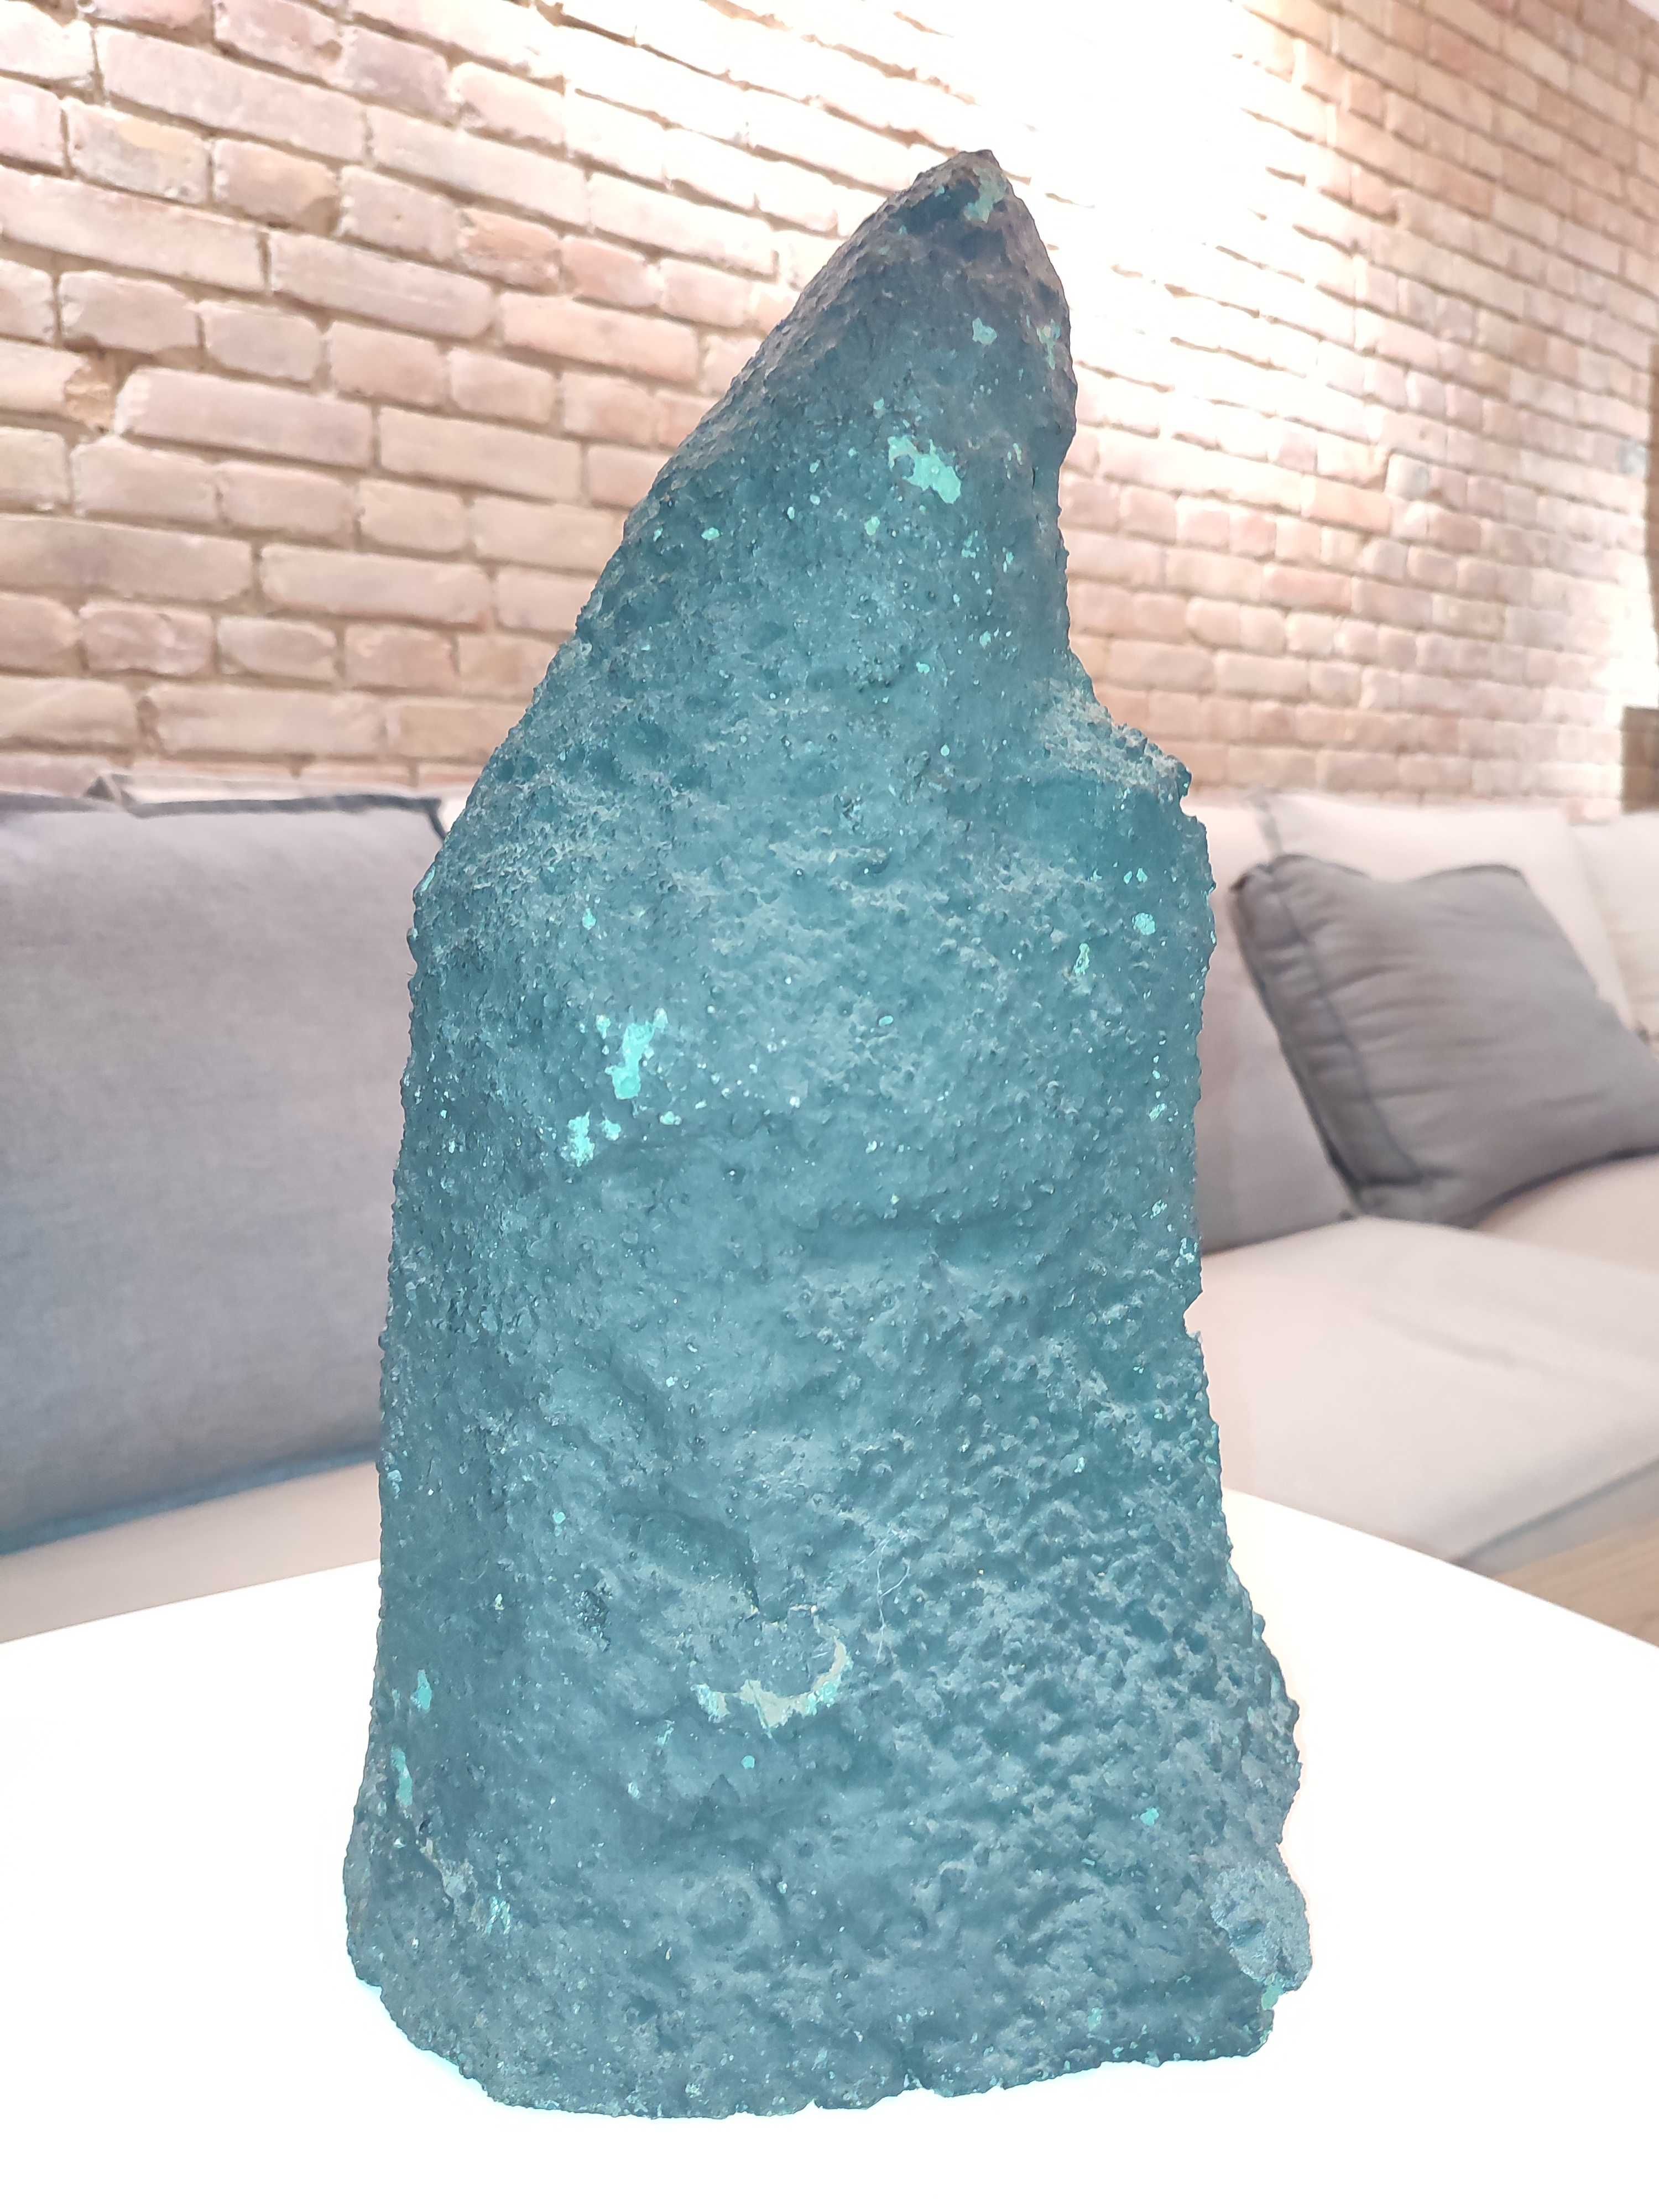 Друза натурального камня 7300 грамм